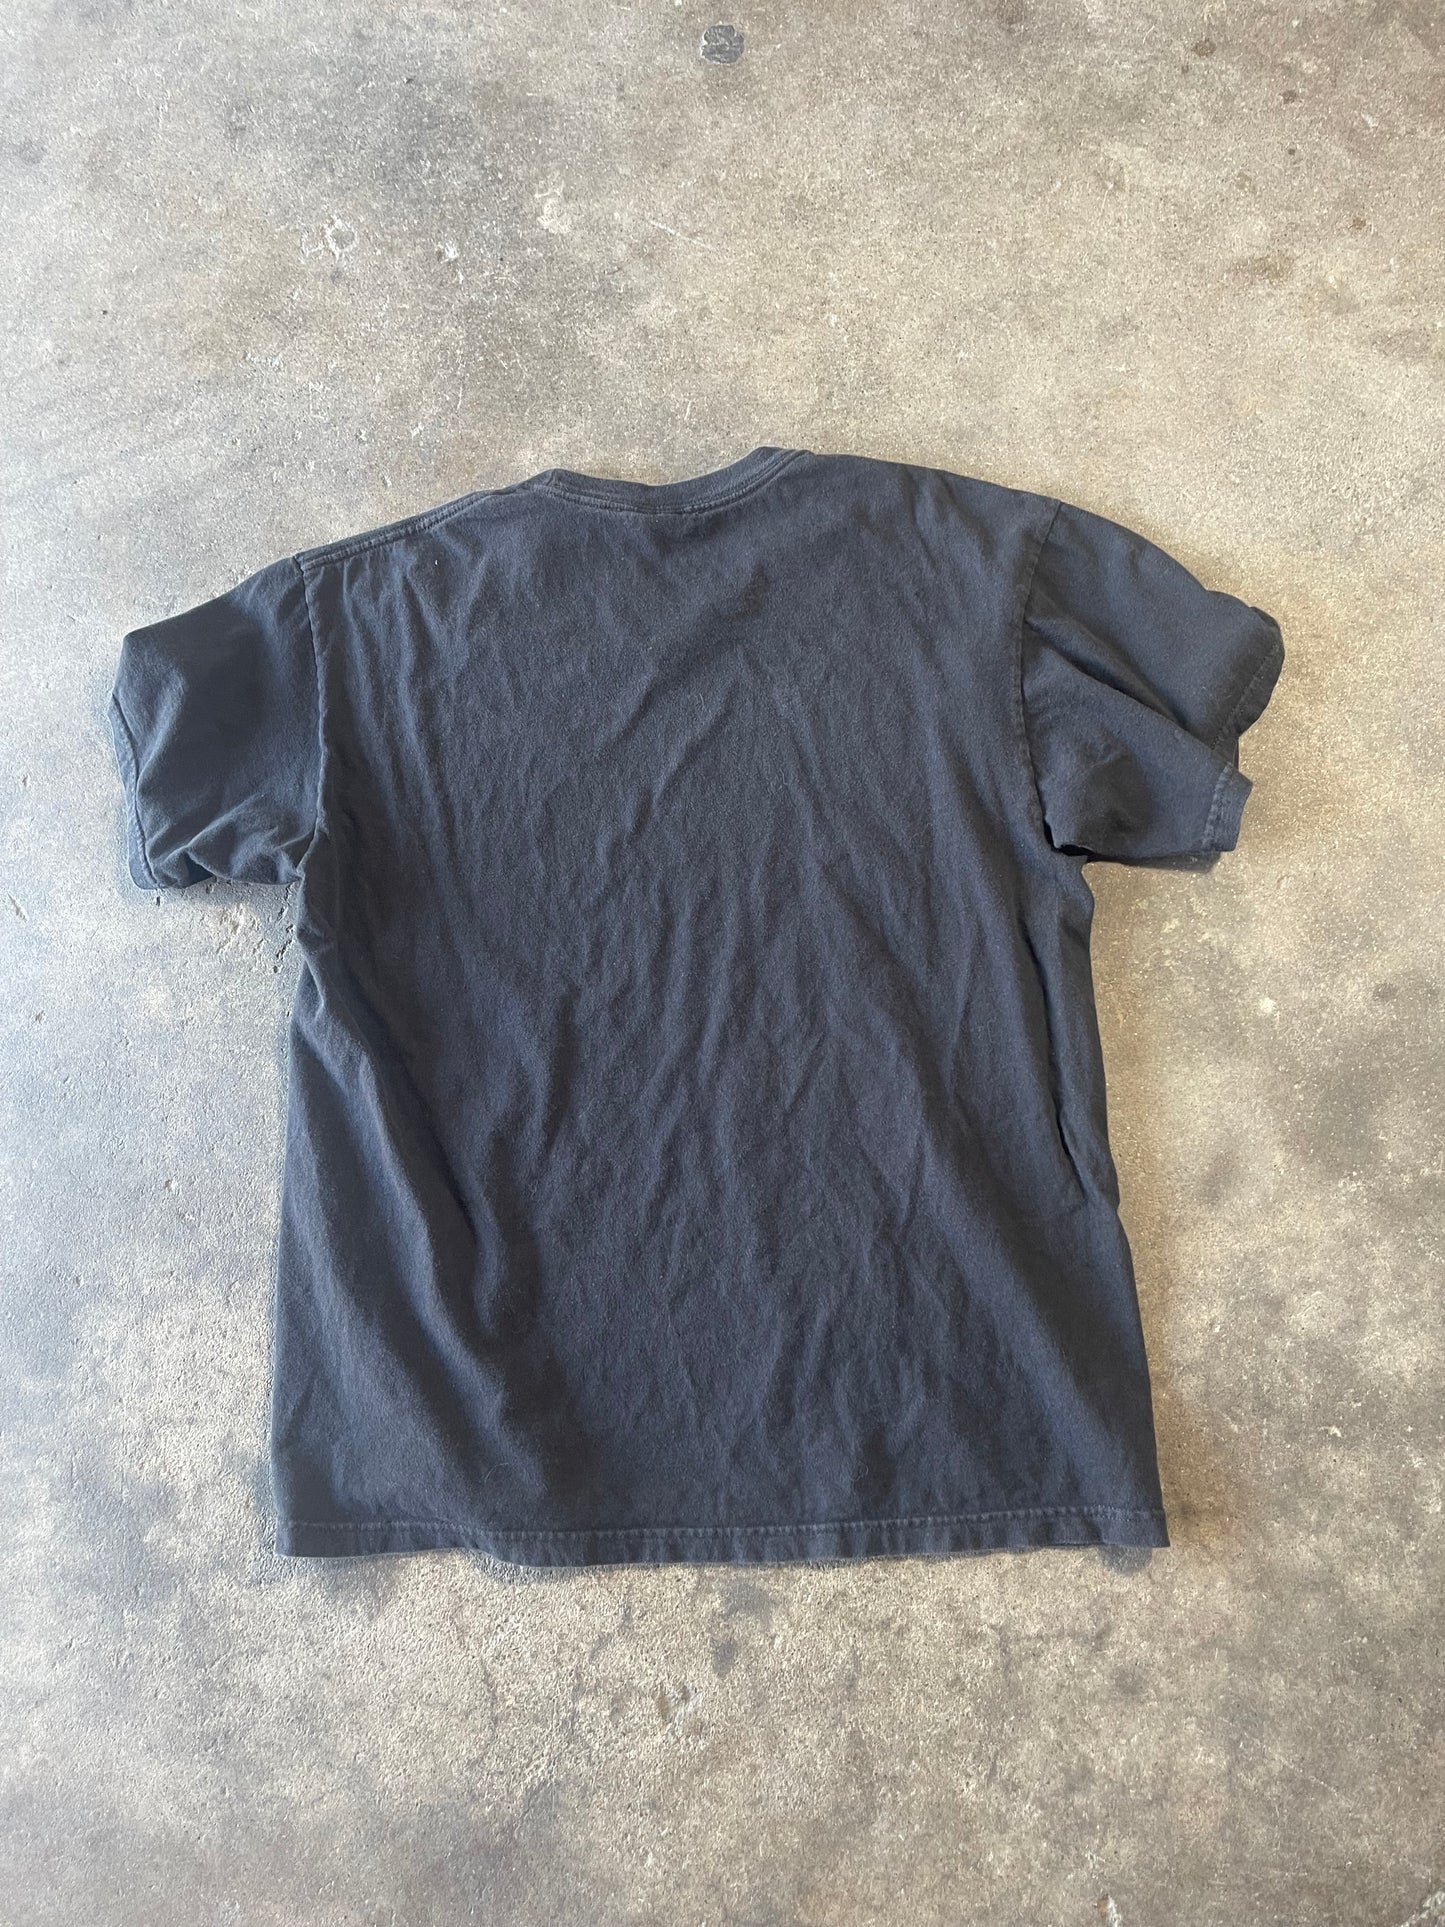 Black Volcom Shirt Large